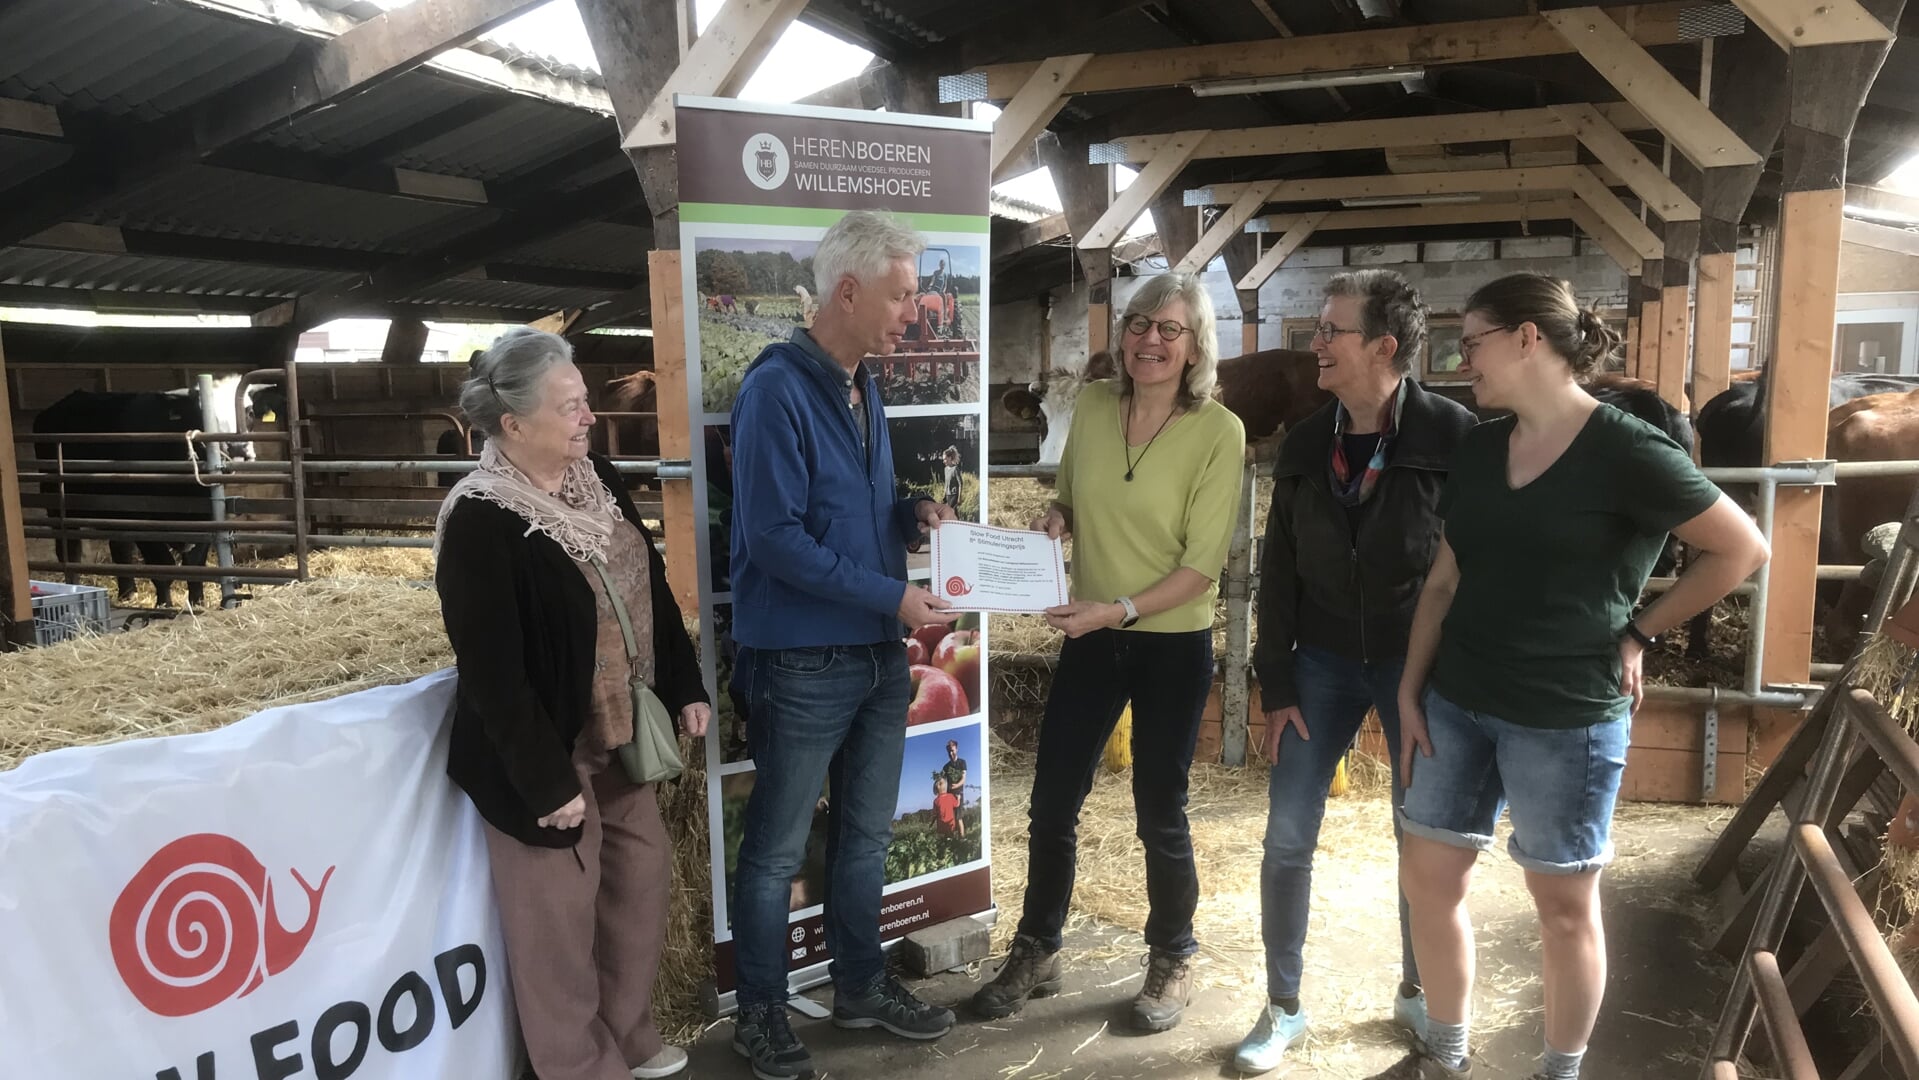 Janet Stapelbroek van Herenboeren Willemshoeve ontvangt de Stimuleringsprijs uit handen van het bestuur van Slow Food Utrecht.